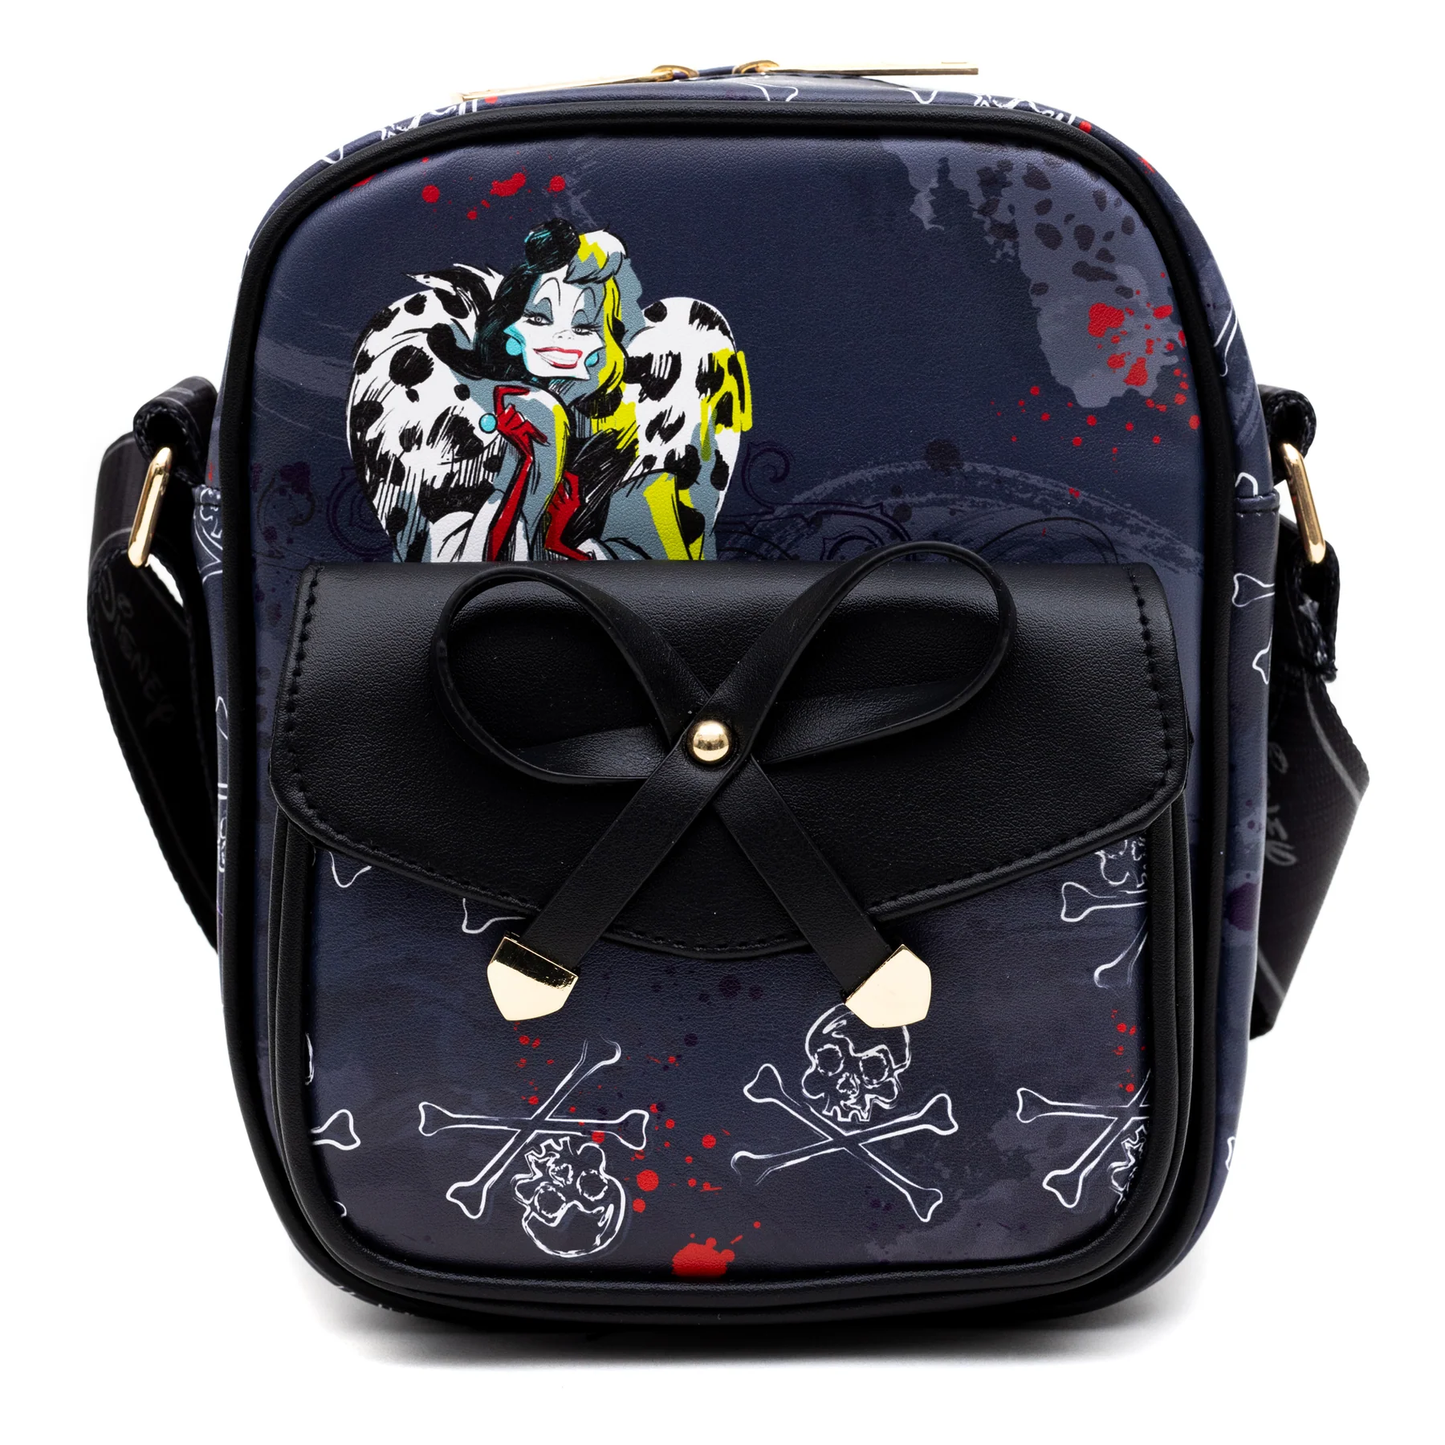 Disney Villains Cruella Crossbody/Shoulder Bag